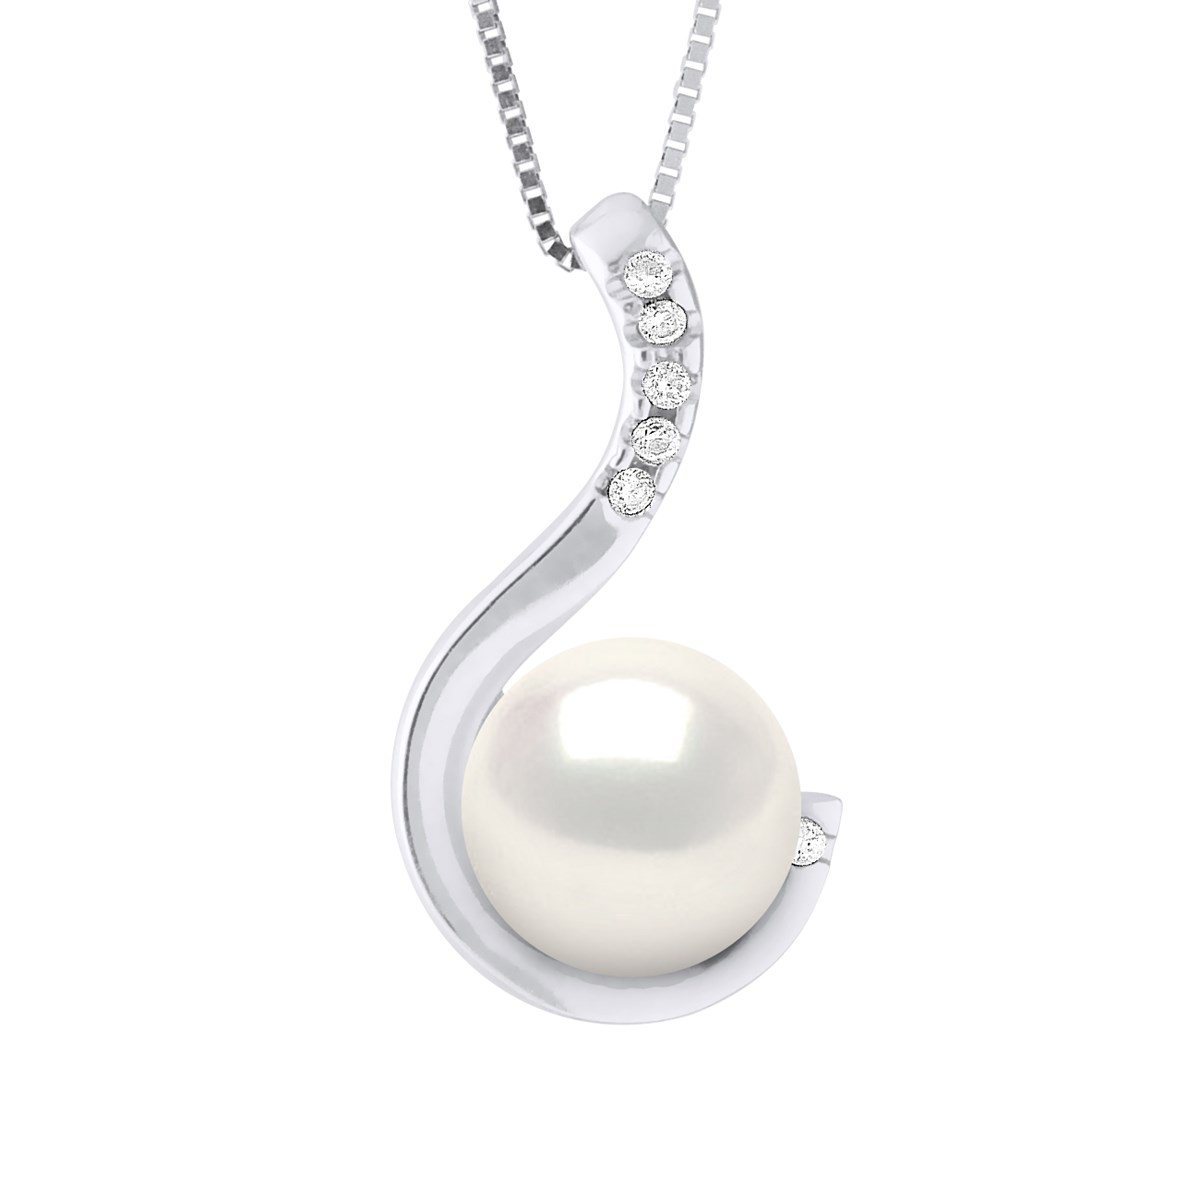 Pendentif Joaillerie 0,06 Cts - Véritable Perle de Culture d'Eau Douce - Blanc Naturel - Ronde 9-10 mm - Or Blanc